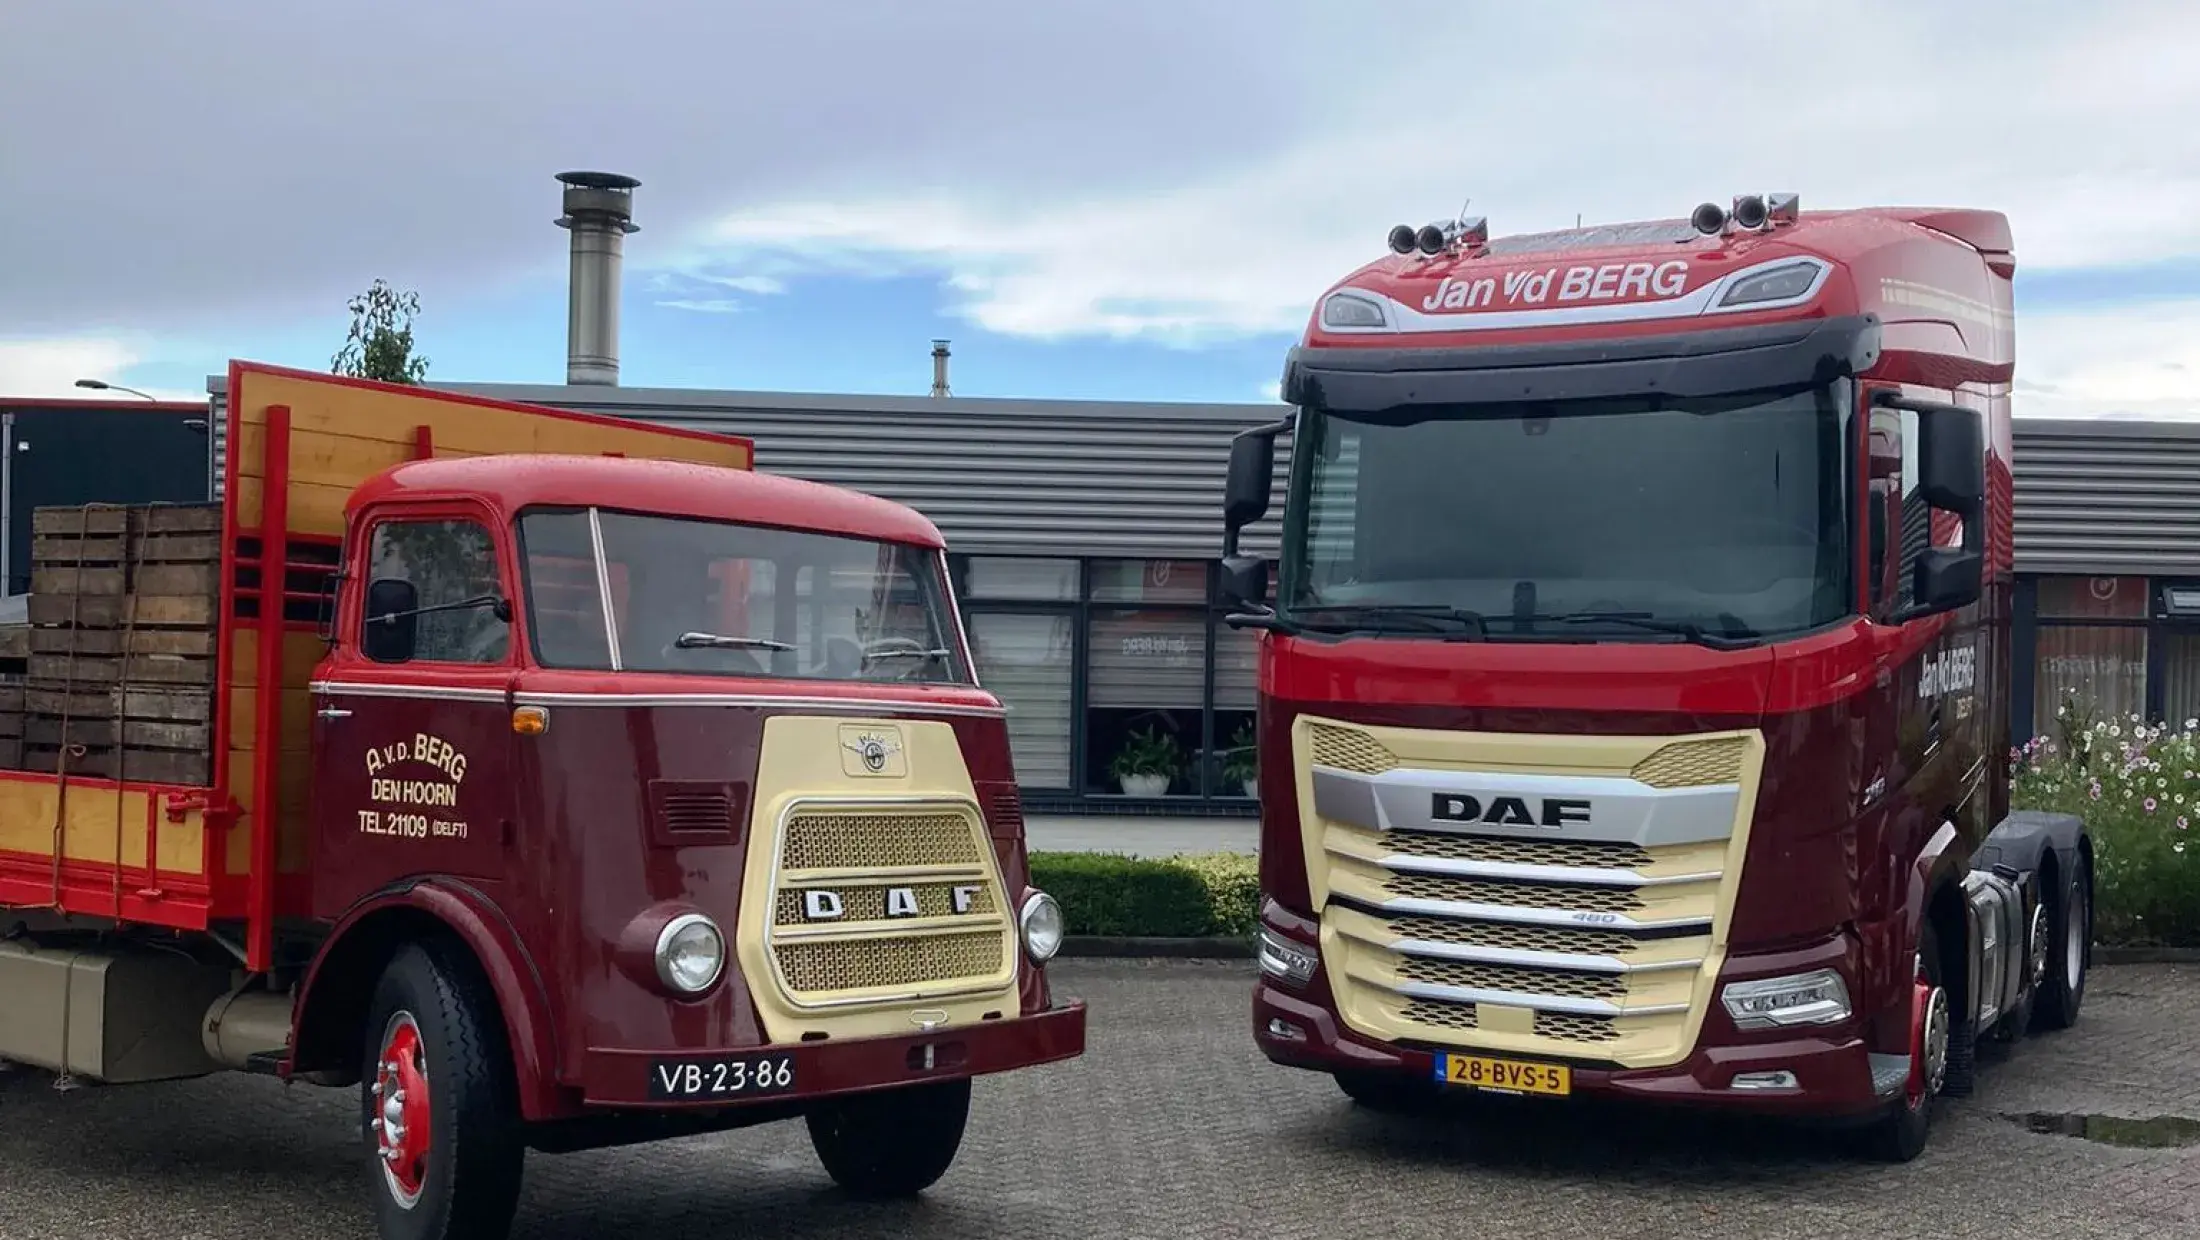 DAF XG 480 FTG NGD - Jan vd Berg Transport Delft